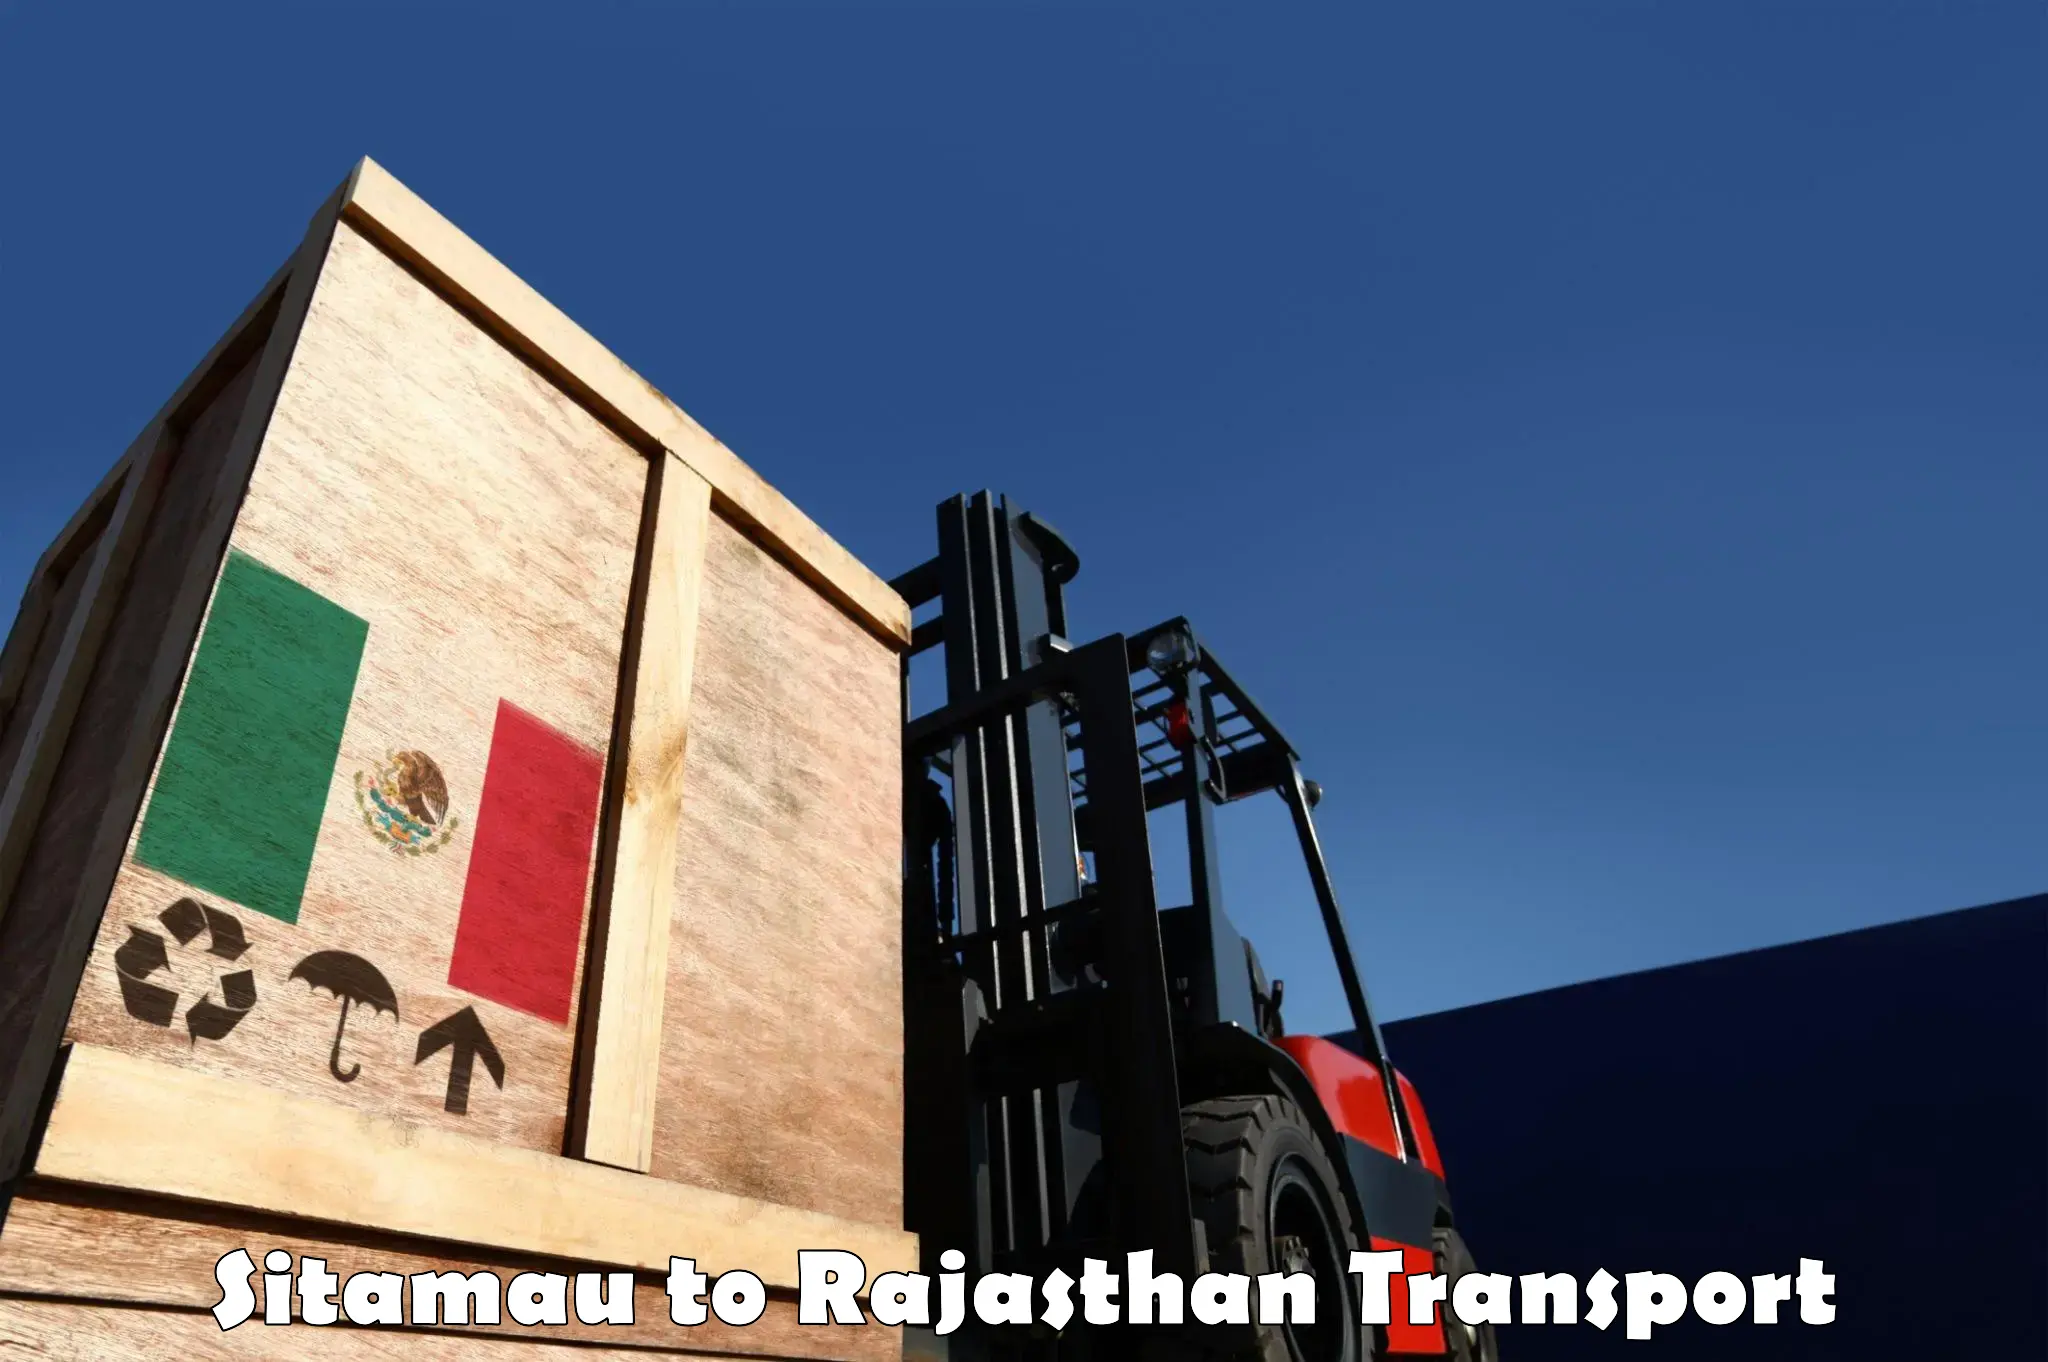 Pick up transport service Sitamau to Kaman